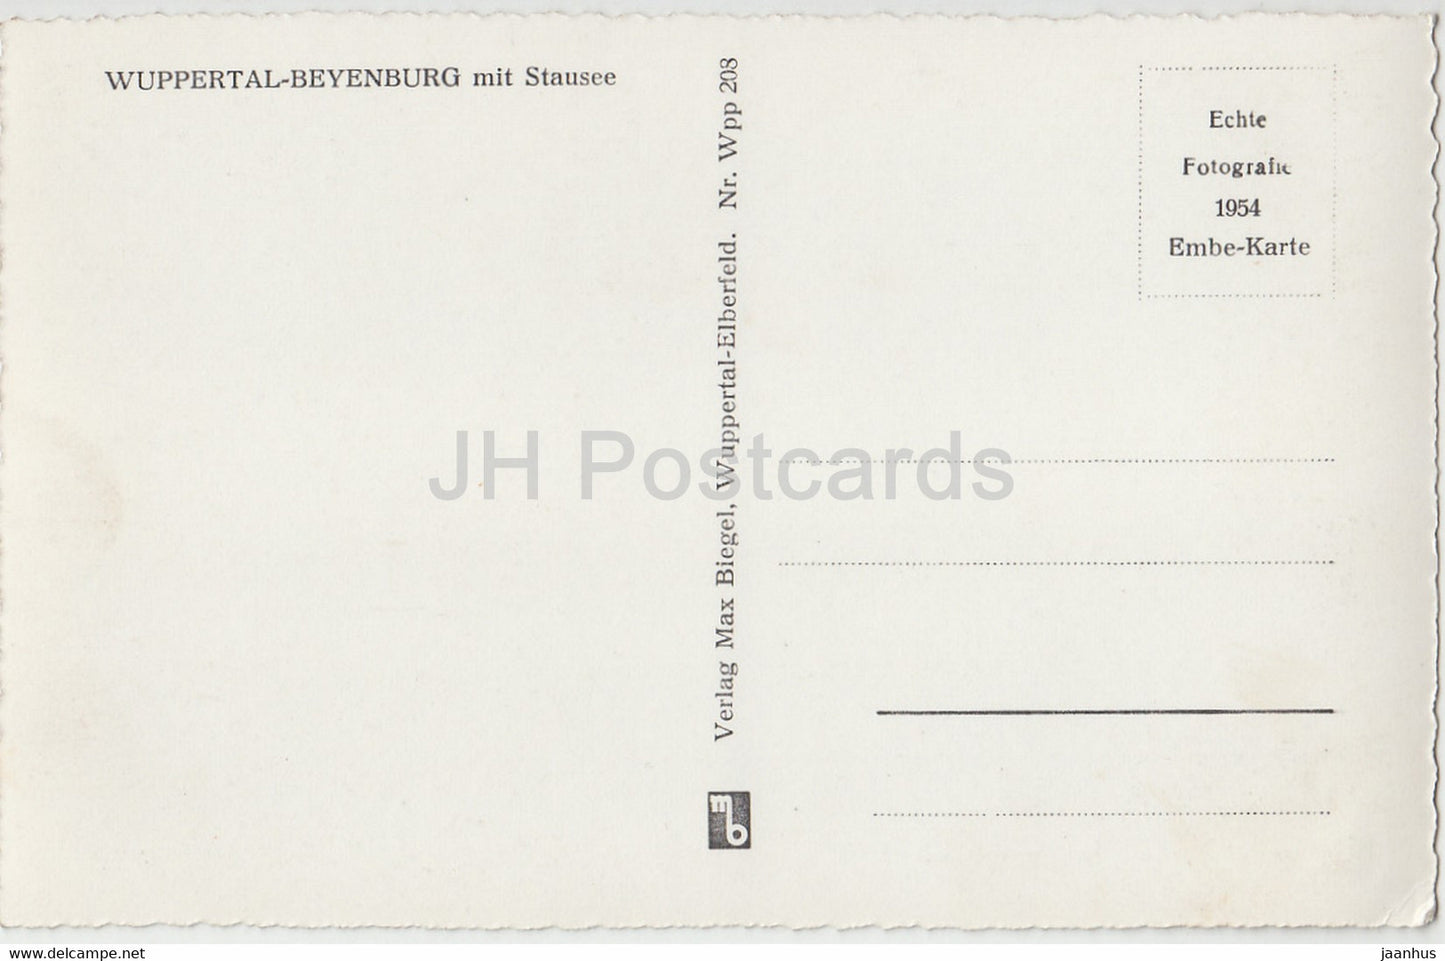 Wuppertal Beyenburg mit Stausee - old postcard - Germany - unused